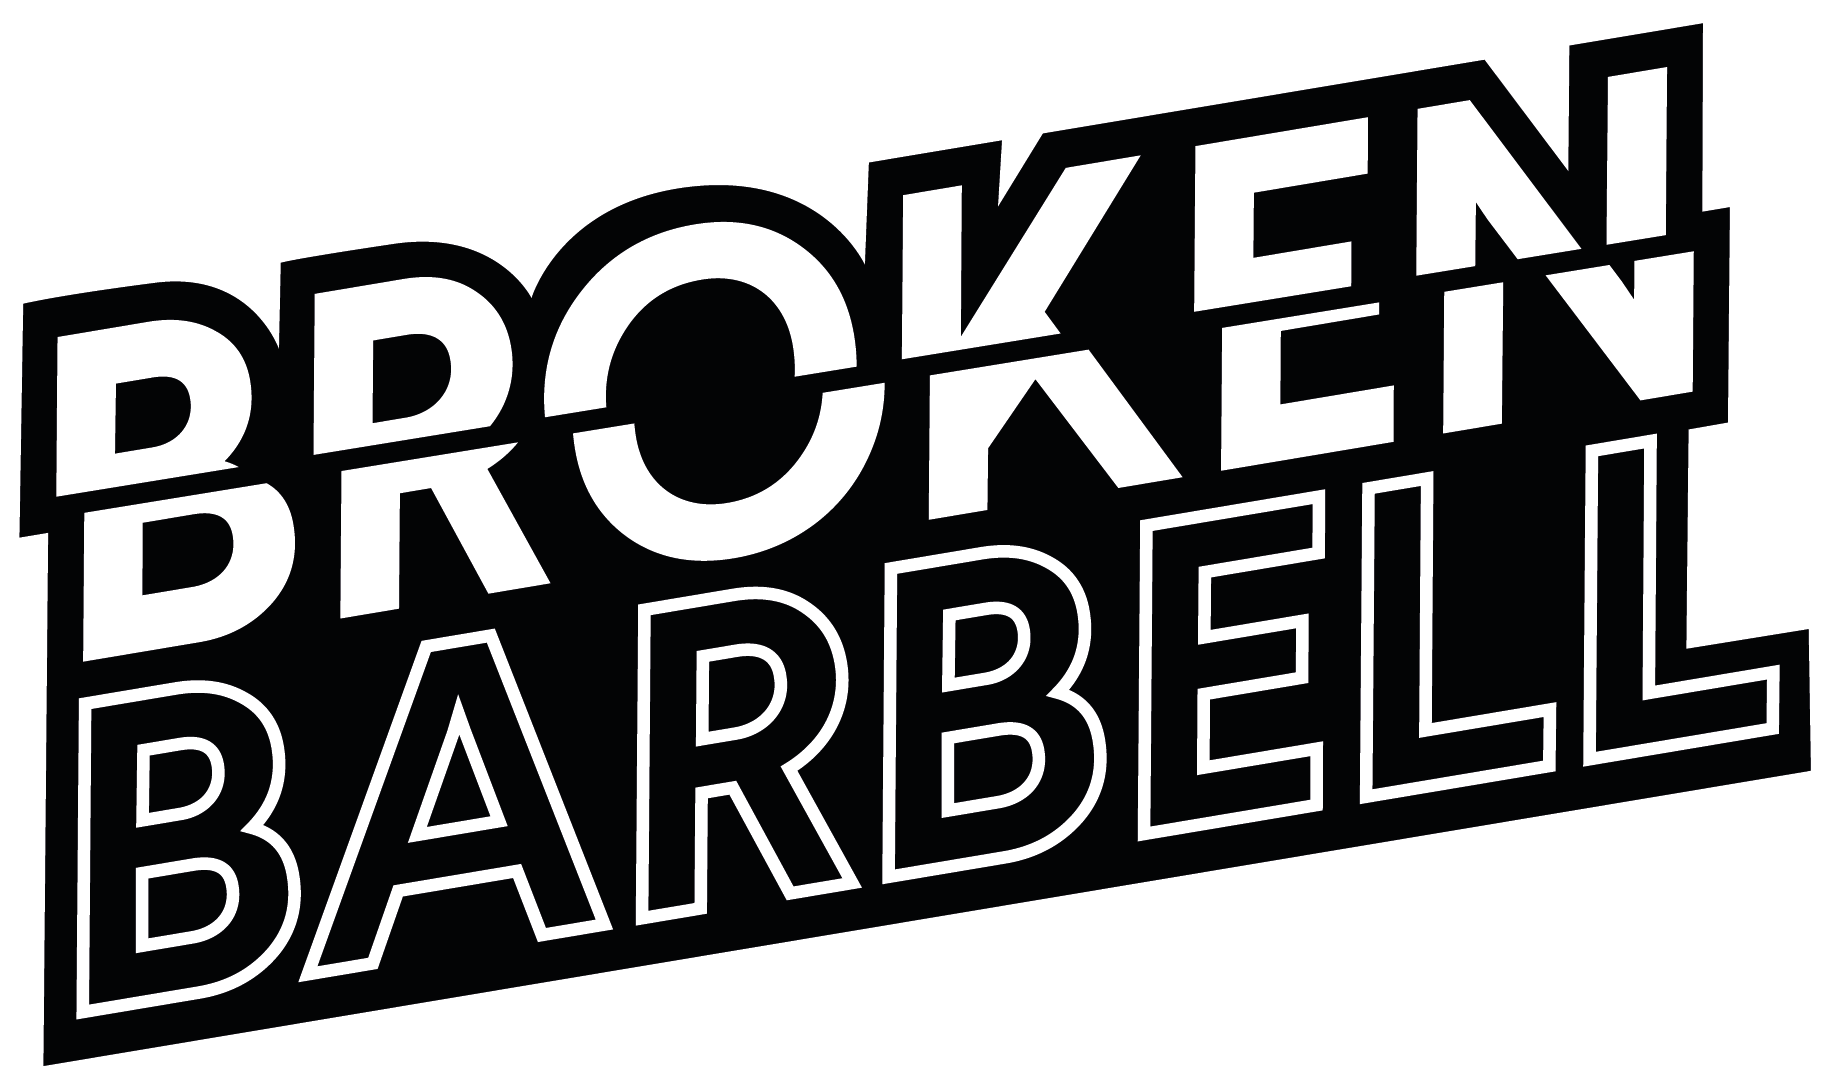 Broken Barbell